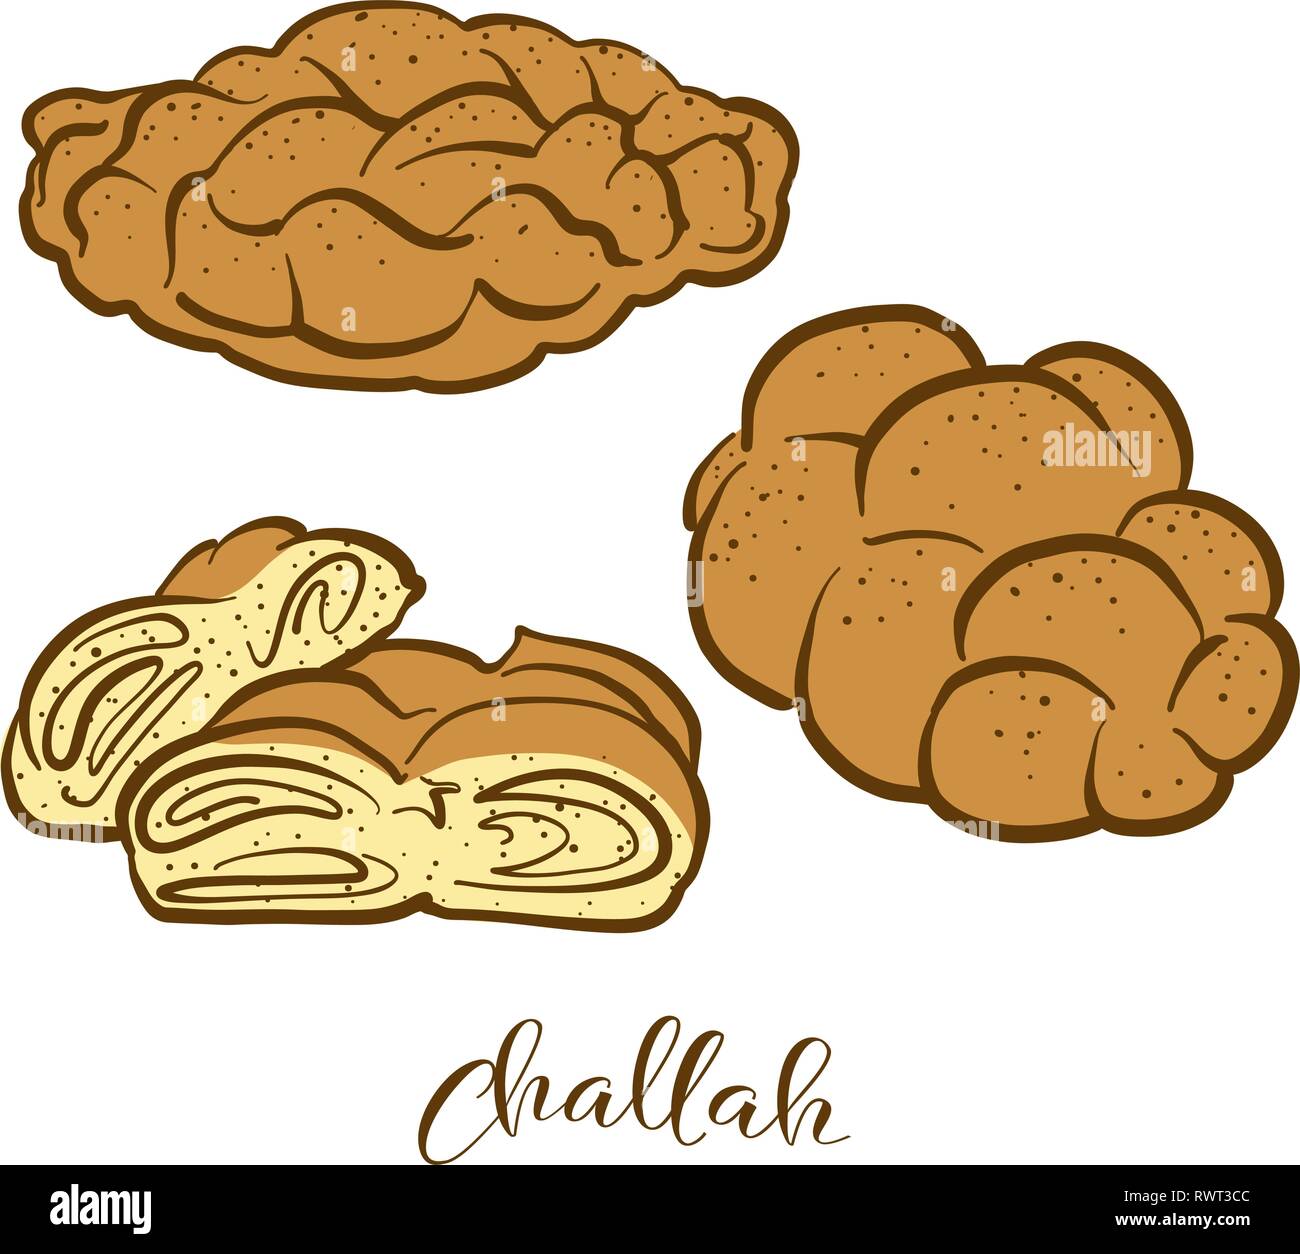 Farbige Skizzen der Challah Brot. Vektor Zeichnung der gesäuertes Essen, in der Regel in Polen und Israel bekannt. Farbige Brot Abbildung Serie. Stock Vektor